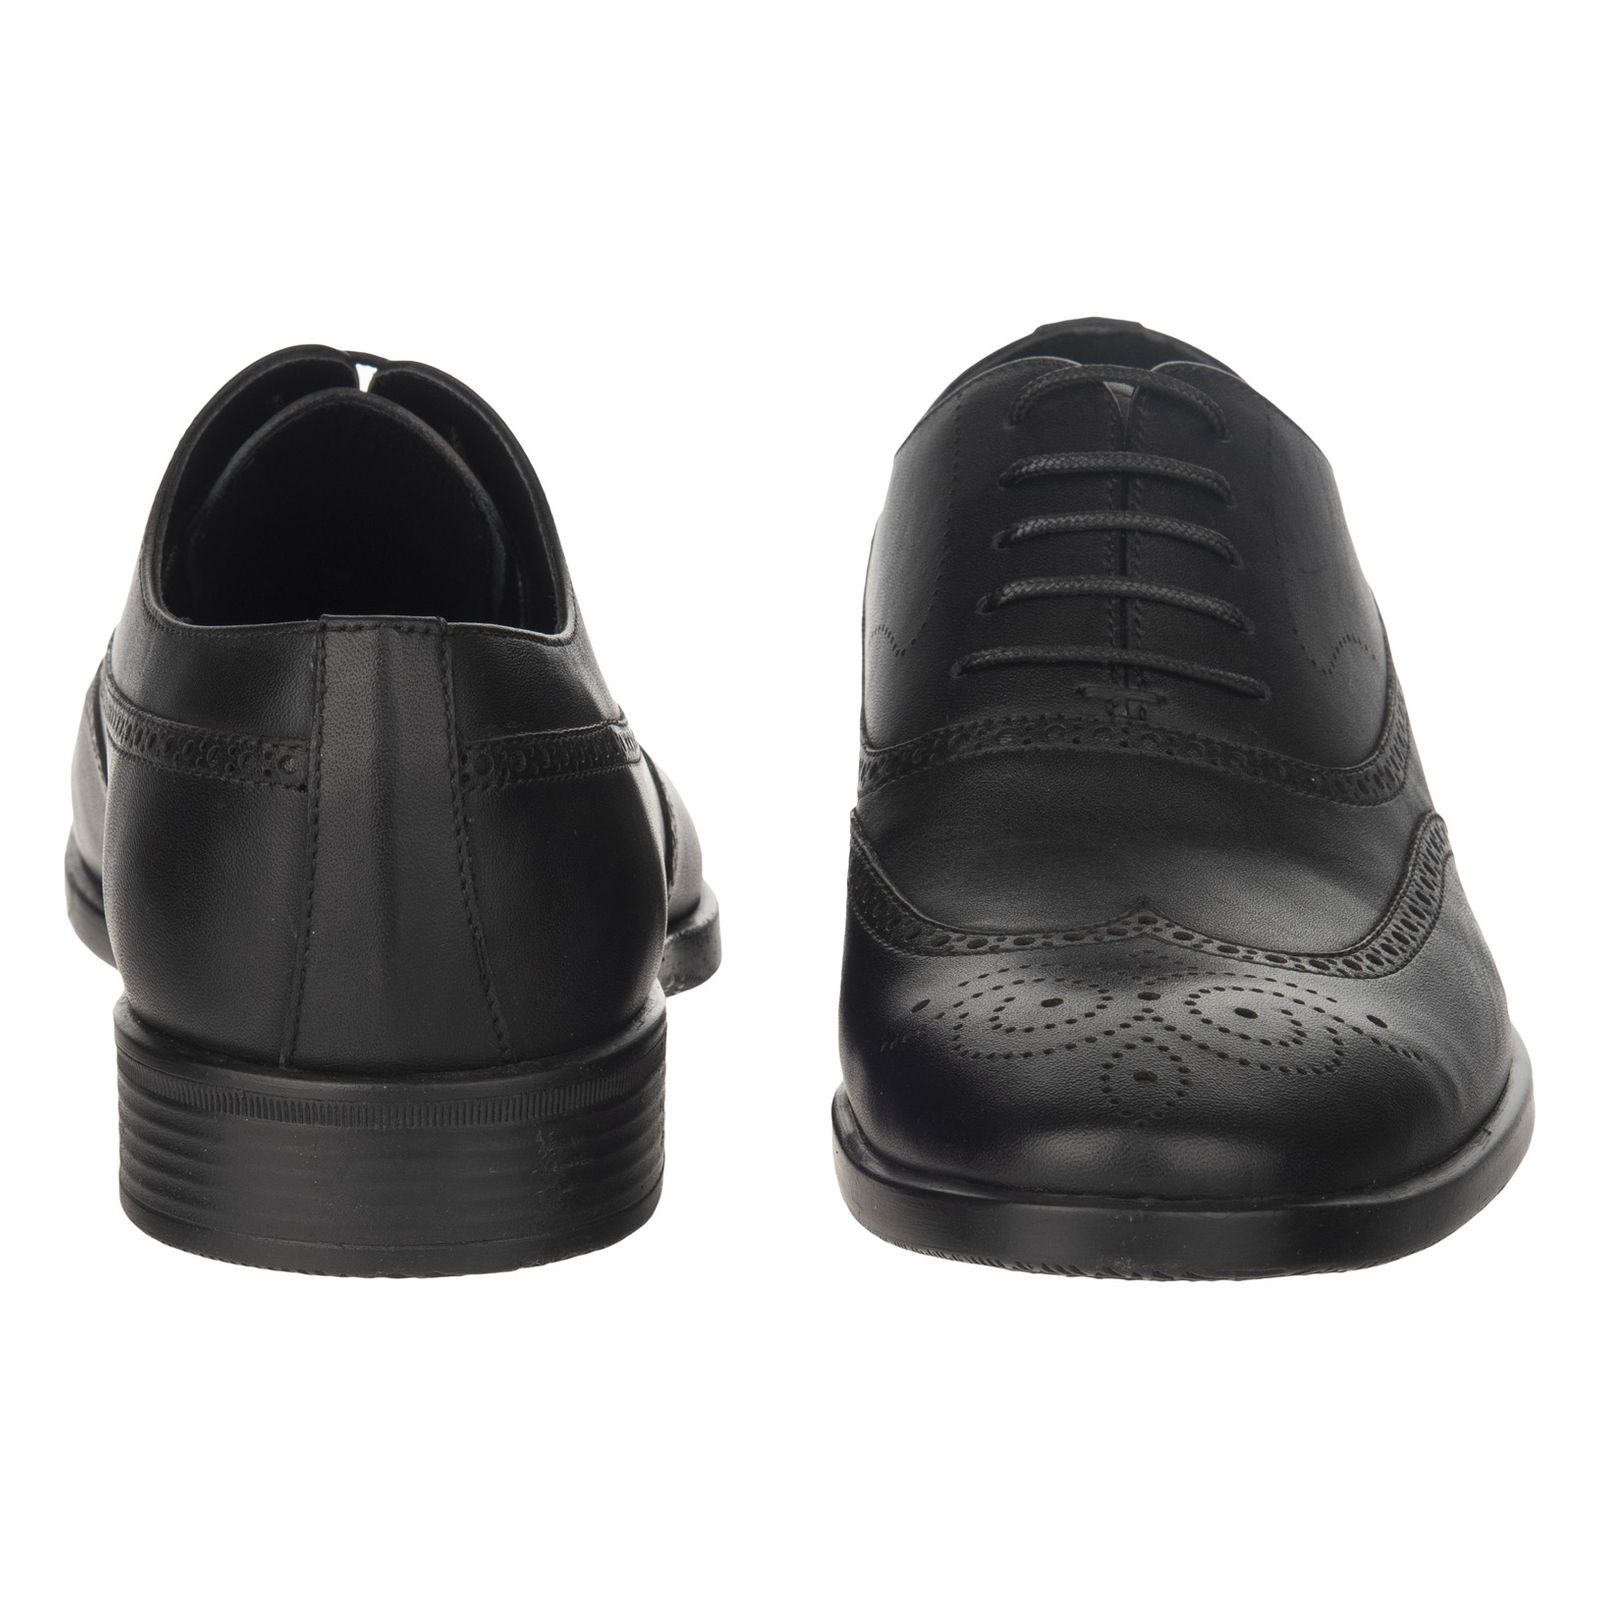 کفش مردانه گاندو مدل 501-99 - مشکی - 6